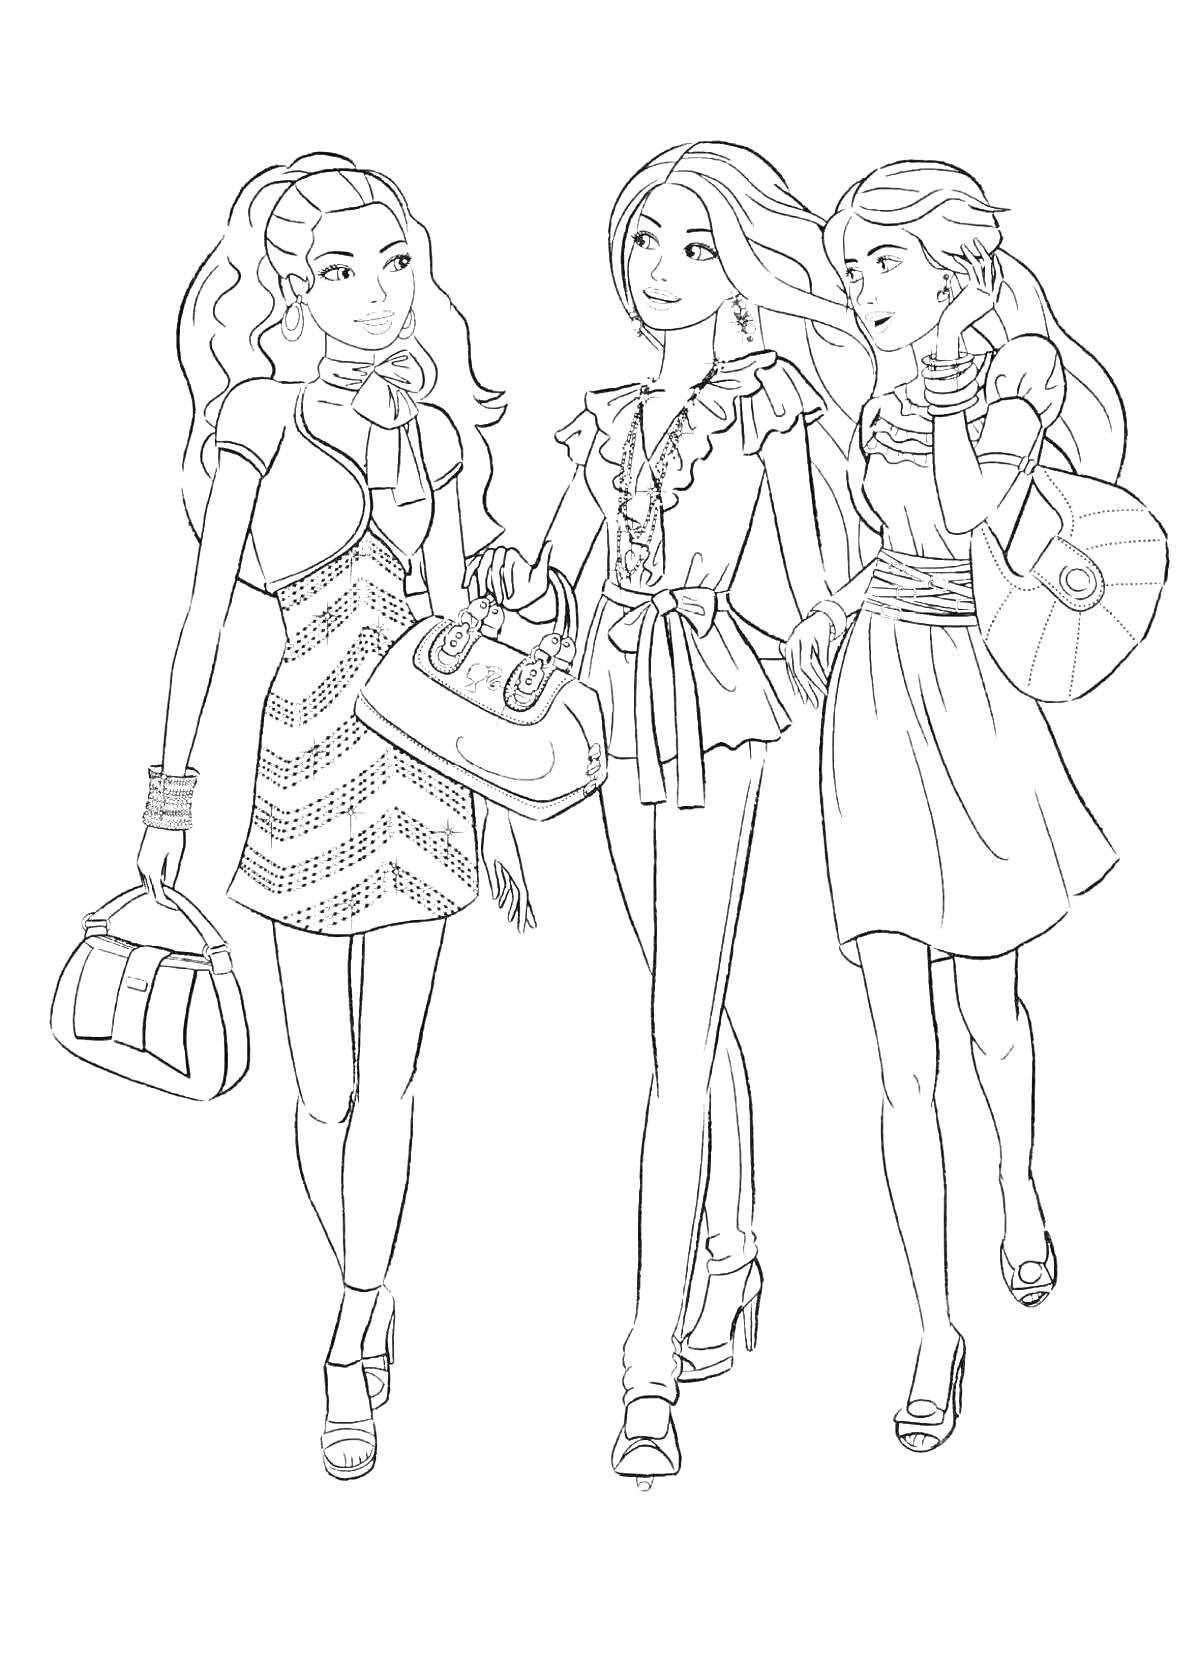 Раскраска Три подруги Барби с сумками и в нарядных одеждах